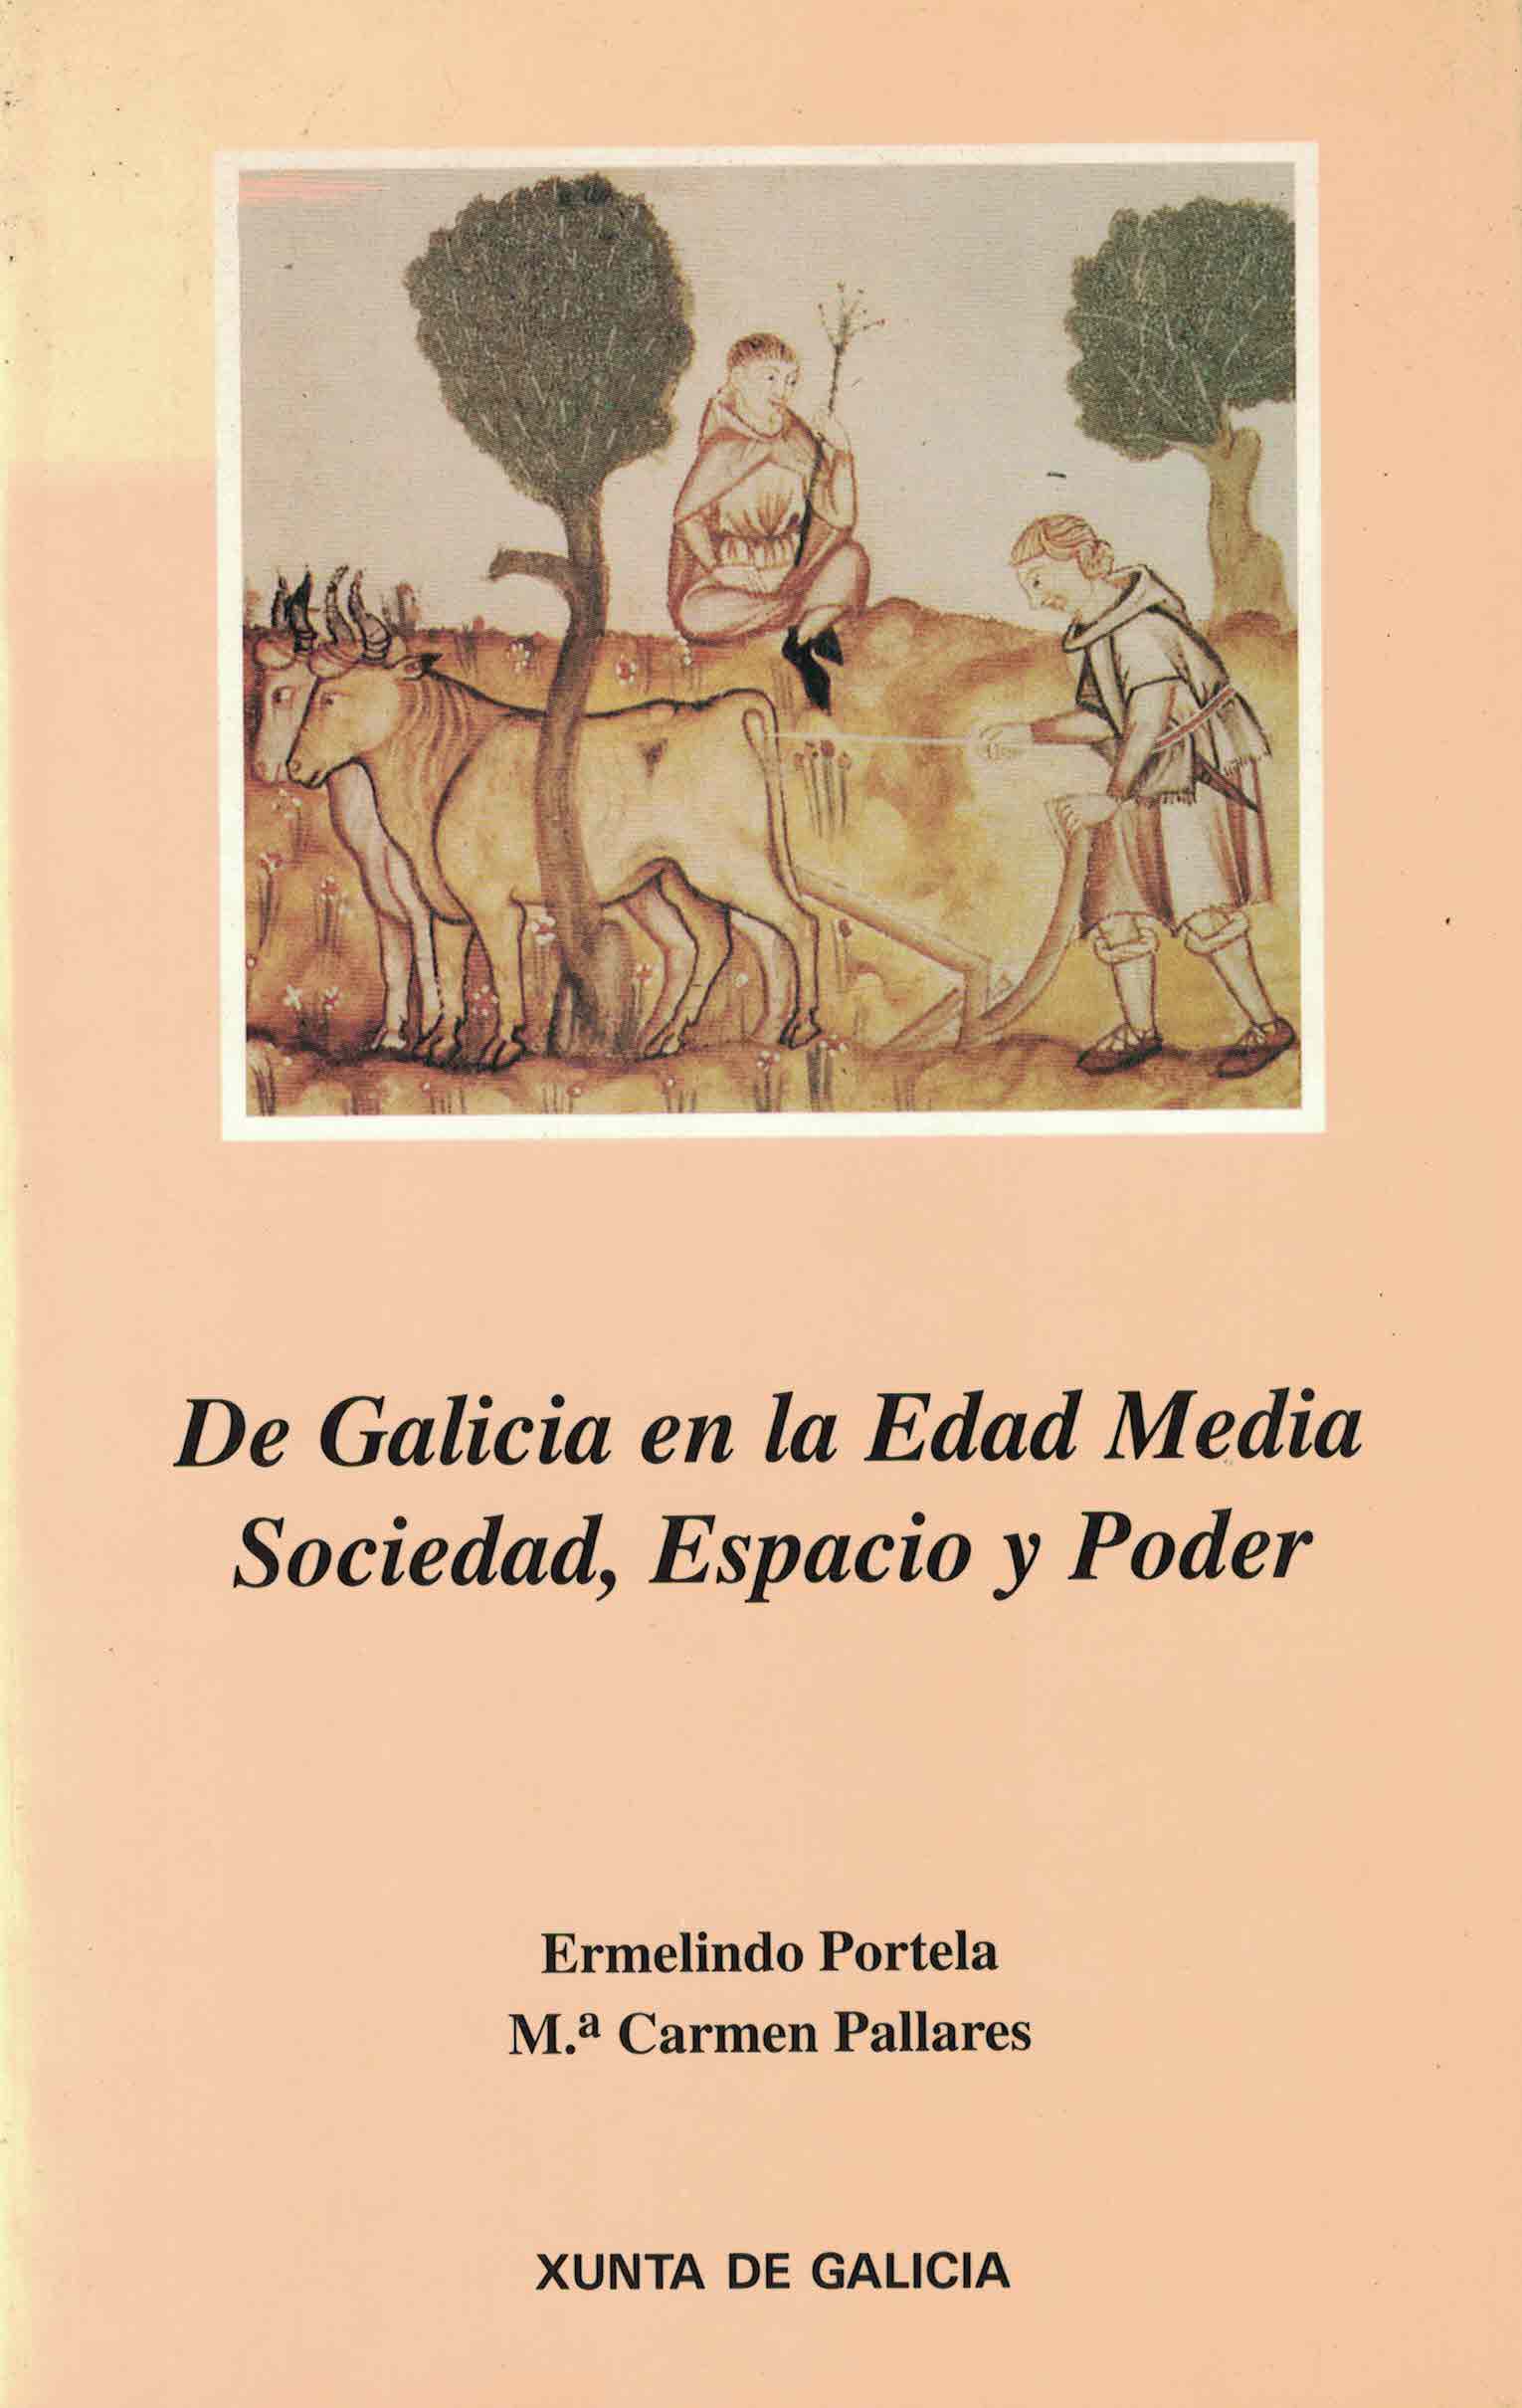 Ermelindo PORTELA: sus libros paquebote.com